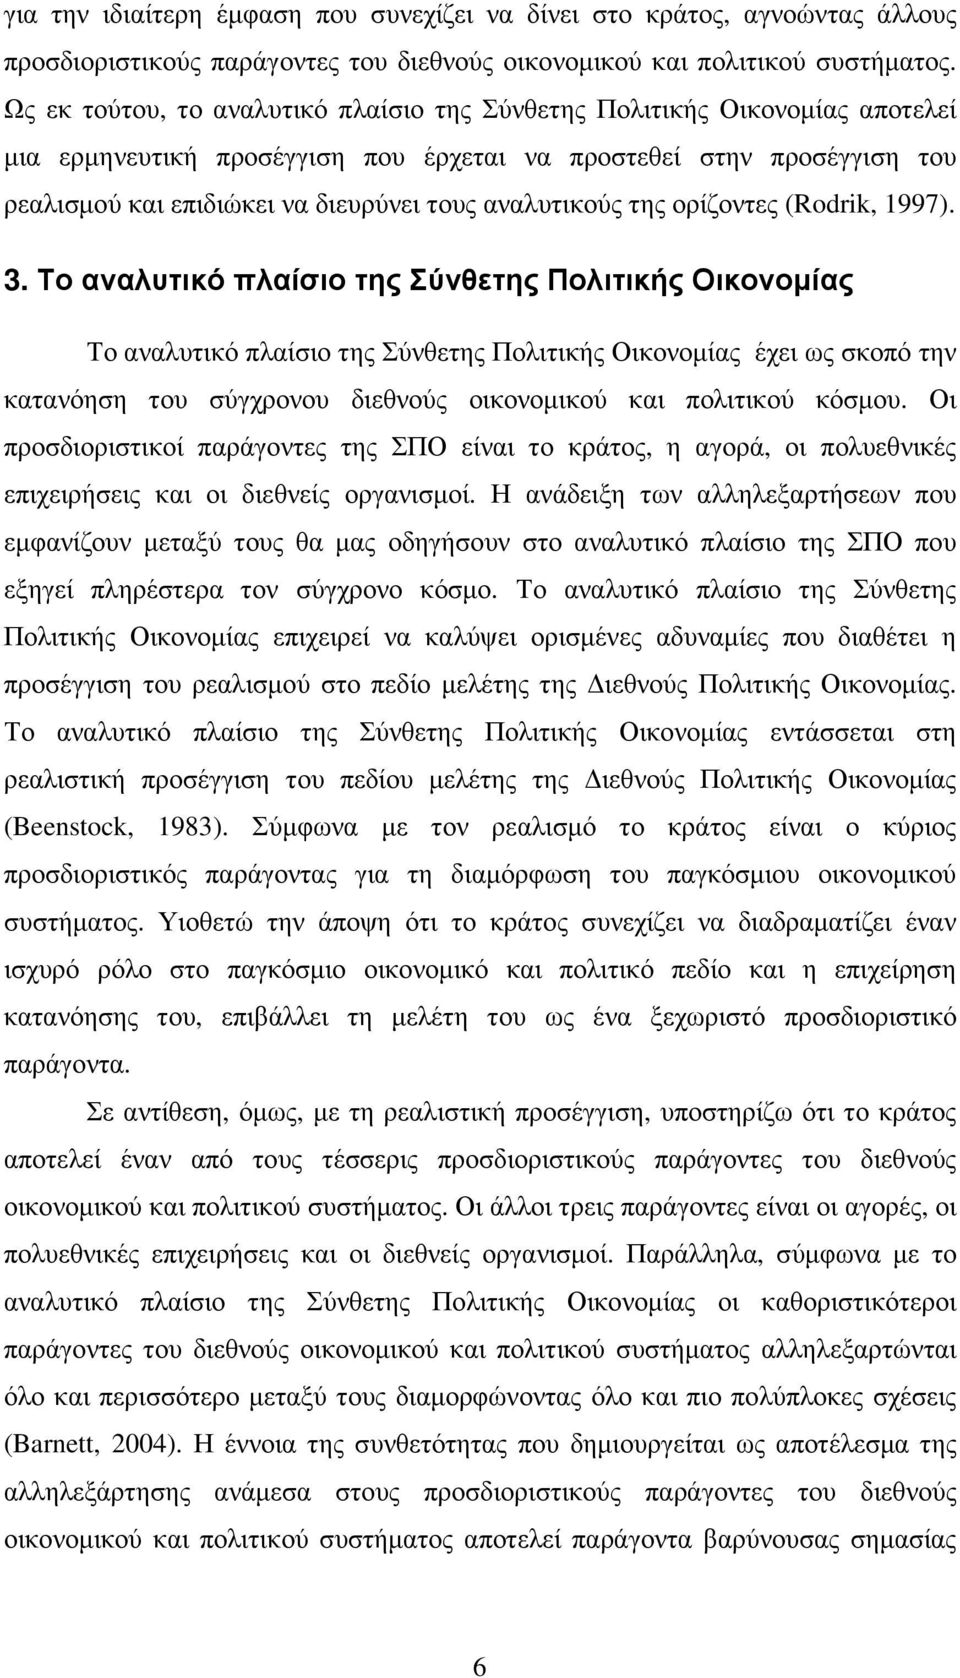 αναλυτικούς της ορίζοντες (Rodrik, 1997). 3.